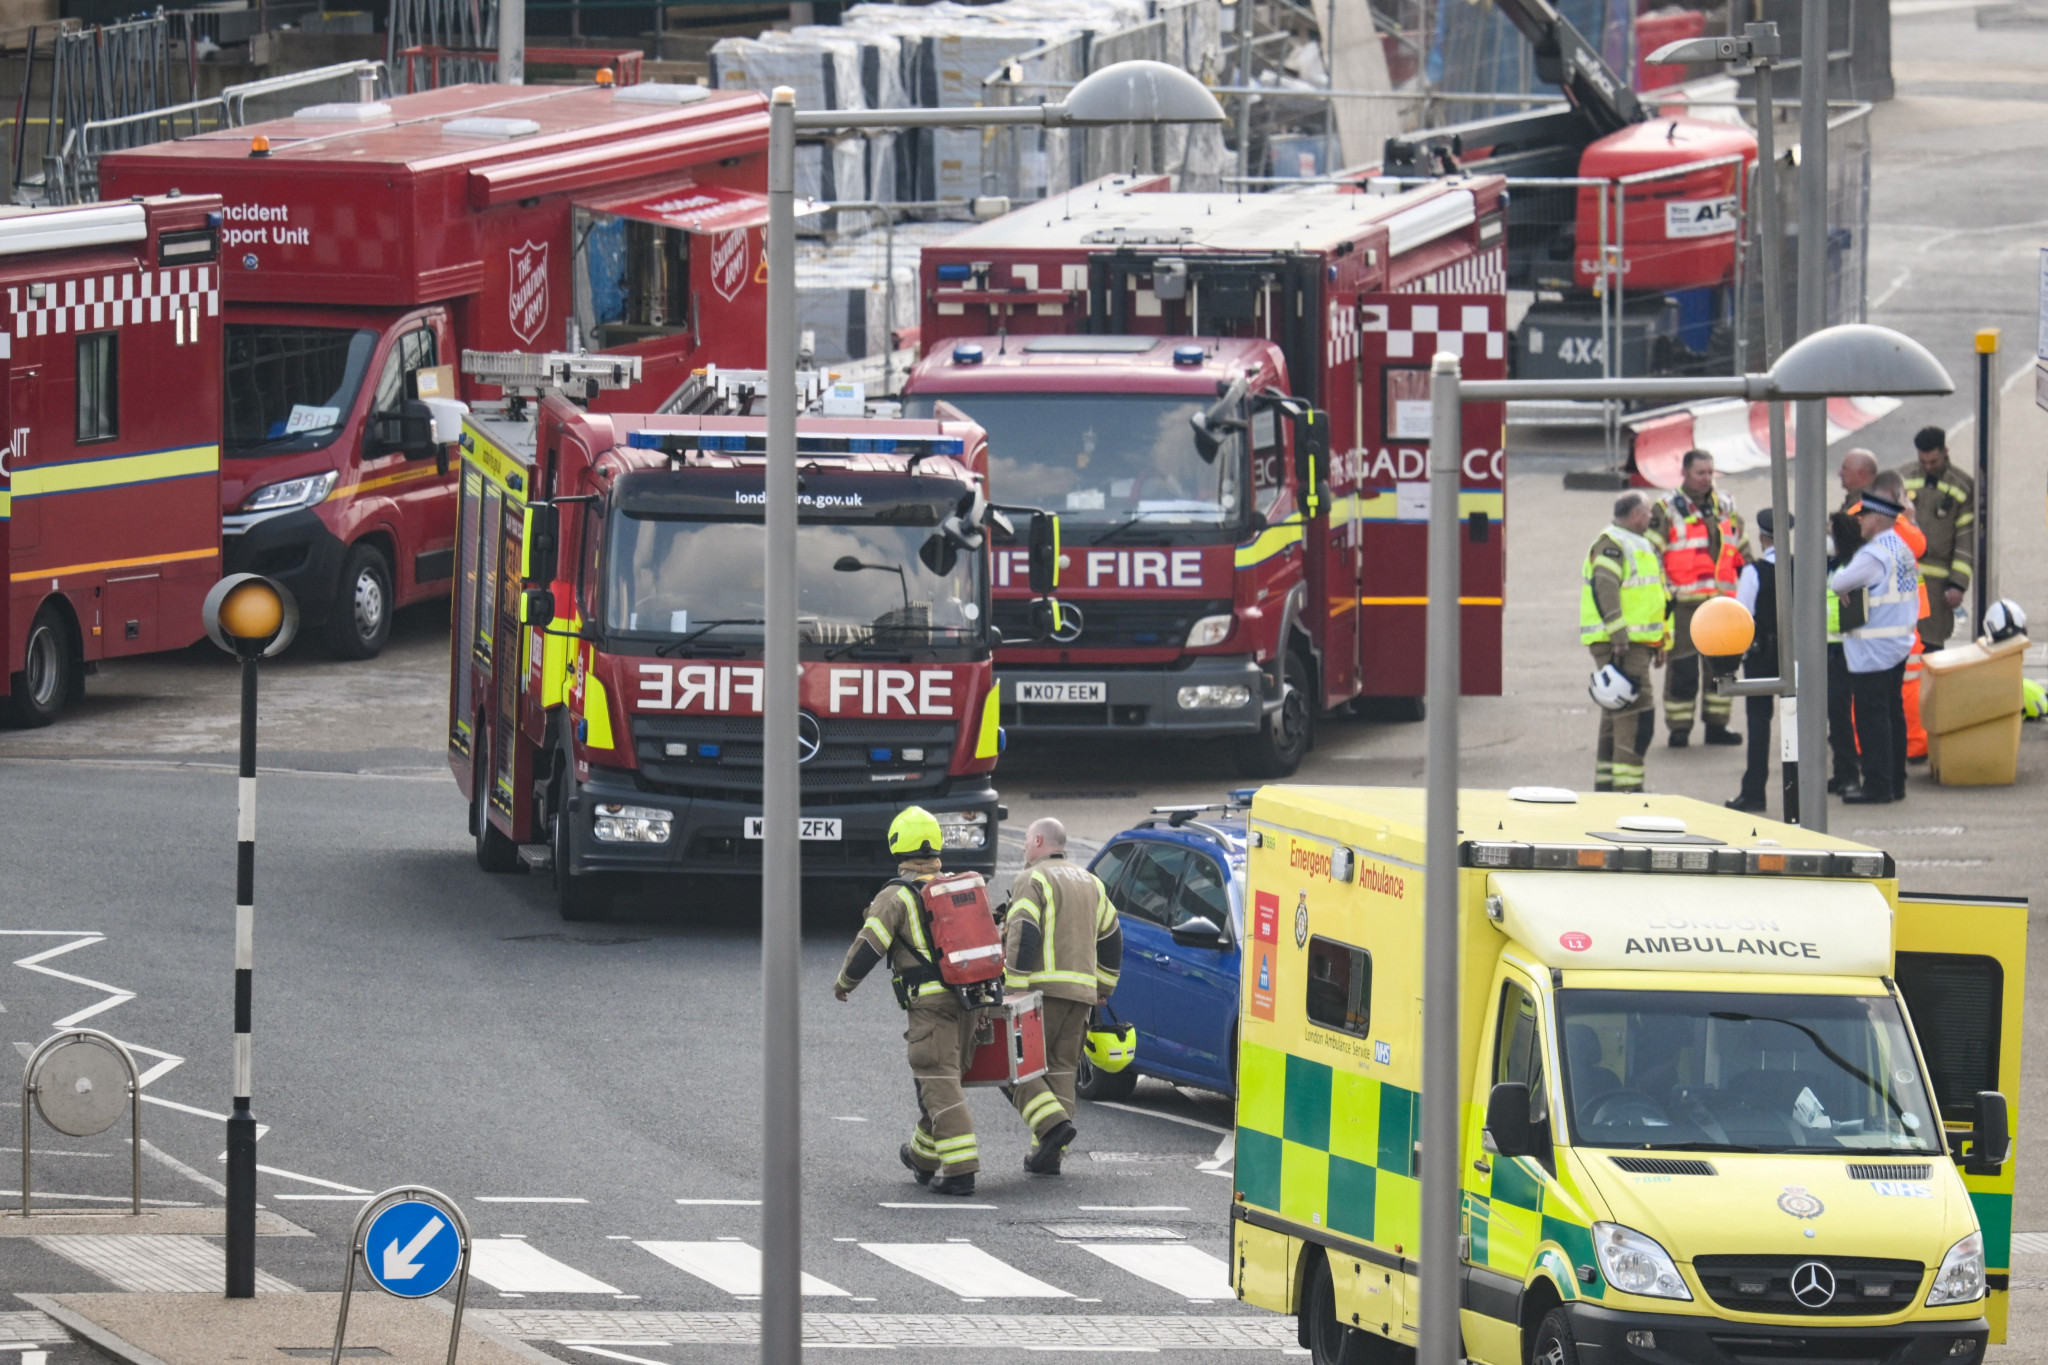 Twenty-nine people were taken to hospital following the gas leak ©Getty Images